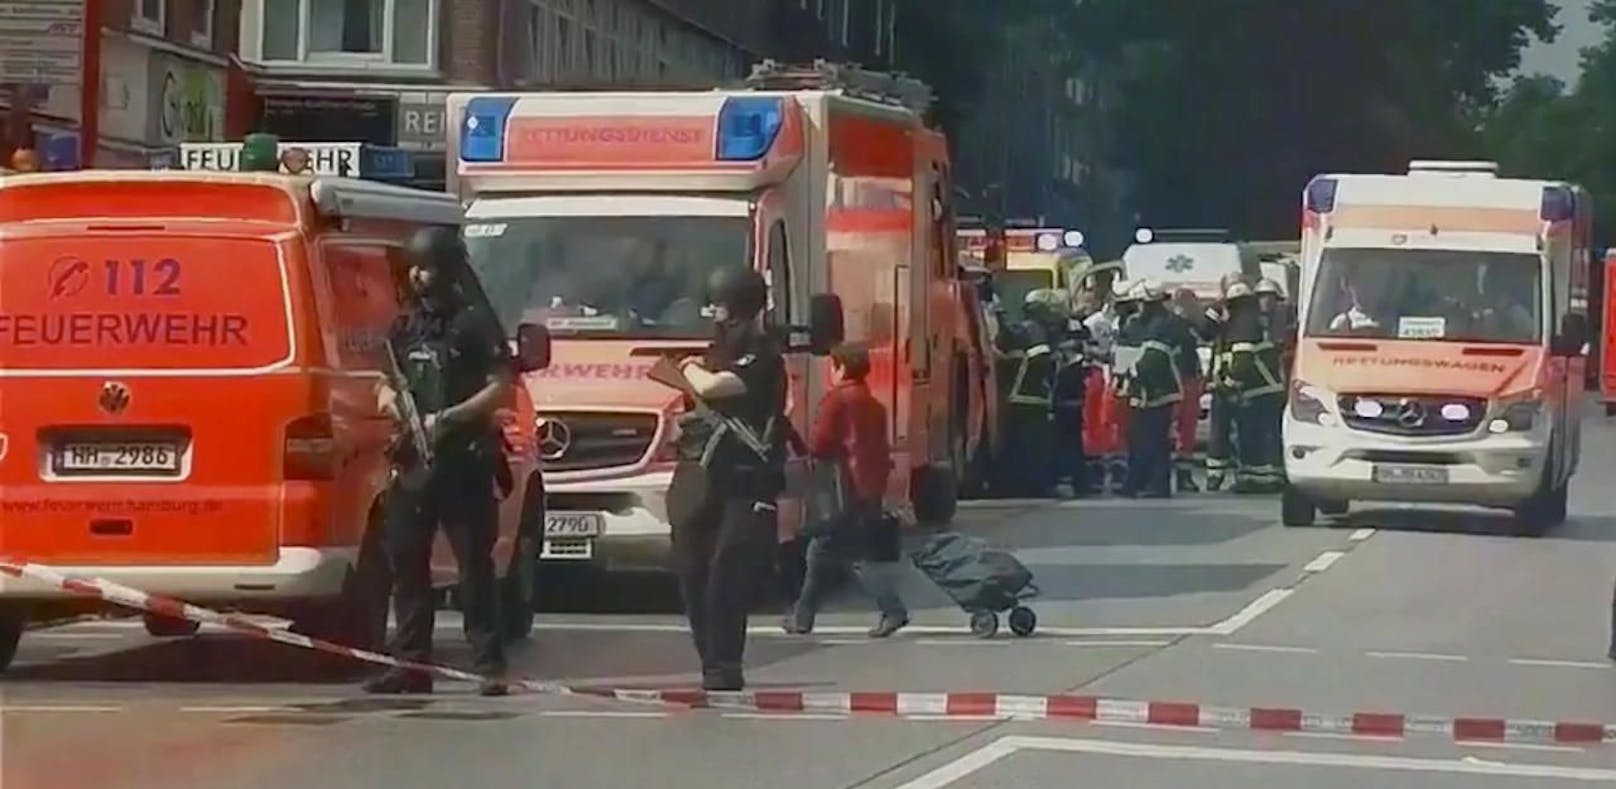 Dank der Fahndungsliste sollen Attentate in Europa verhindert werden: Hamburger Polizisten im Einsatz nach einer Messerattacke. (28. Juli 2017)